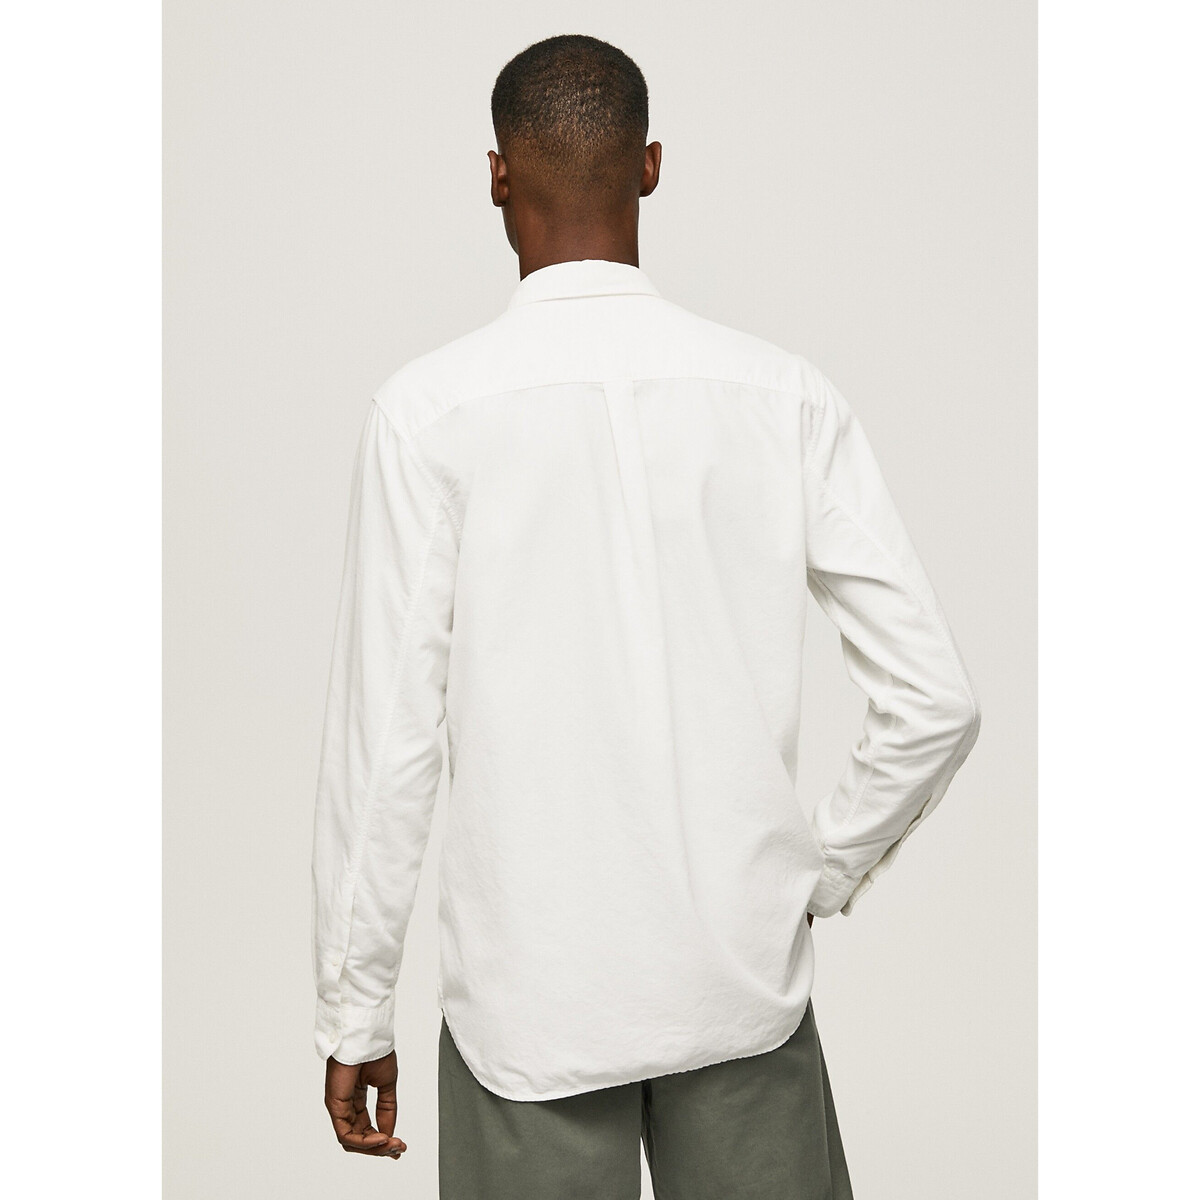 Рубашка Из ткани оксфорд воротник на пуговицах L белый LaRedoute, размер L - фото 3